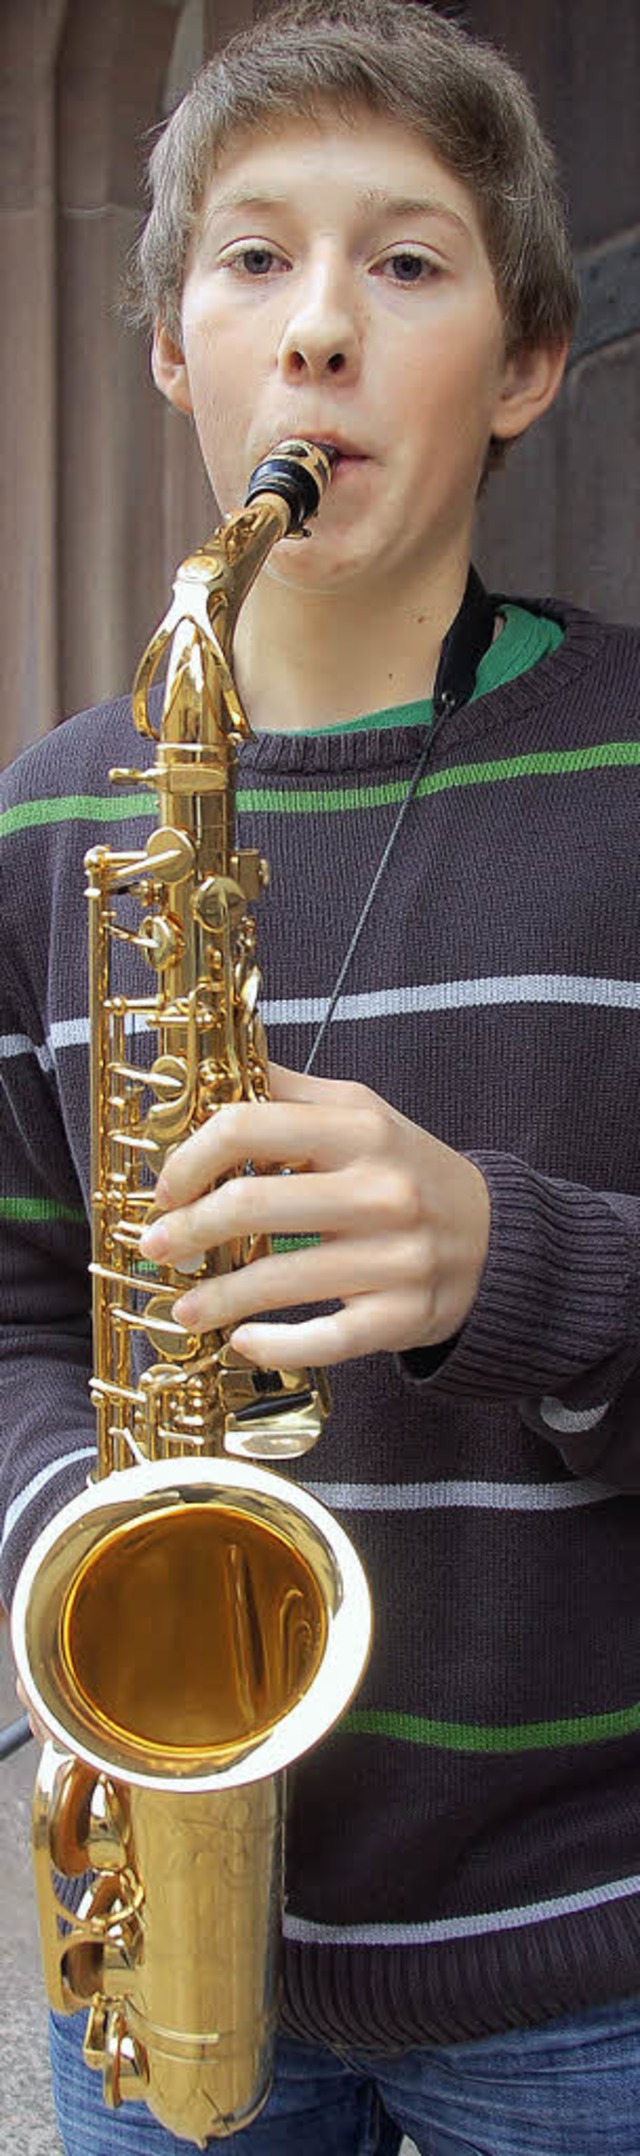 Moritz Riesterer mit seinem Saxofon.  | Foto: sebastian barthmes